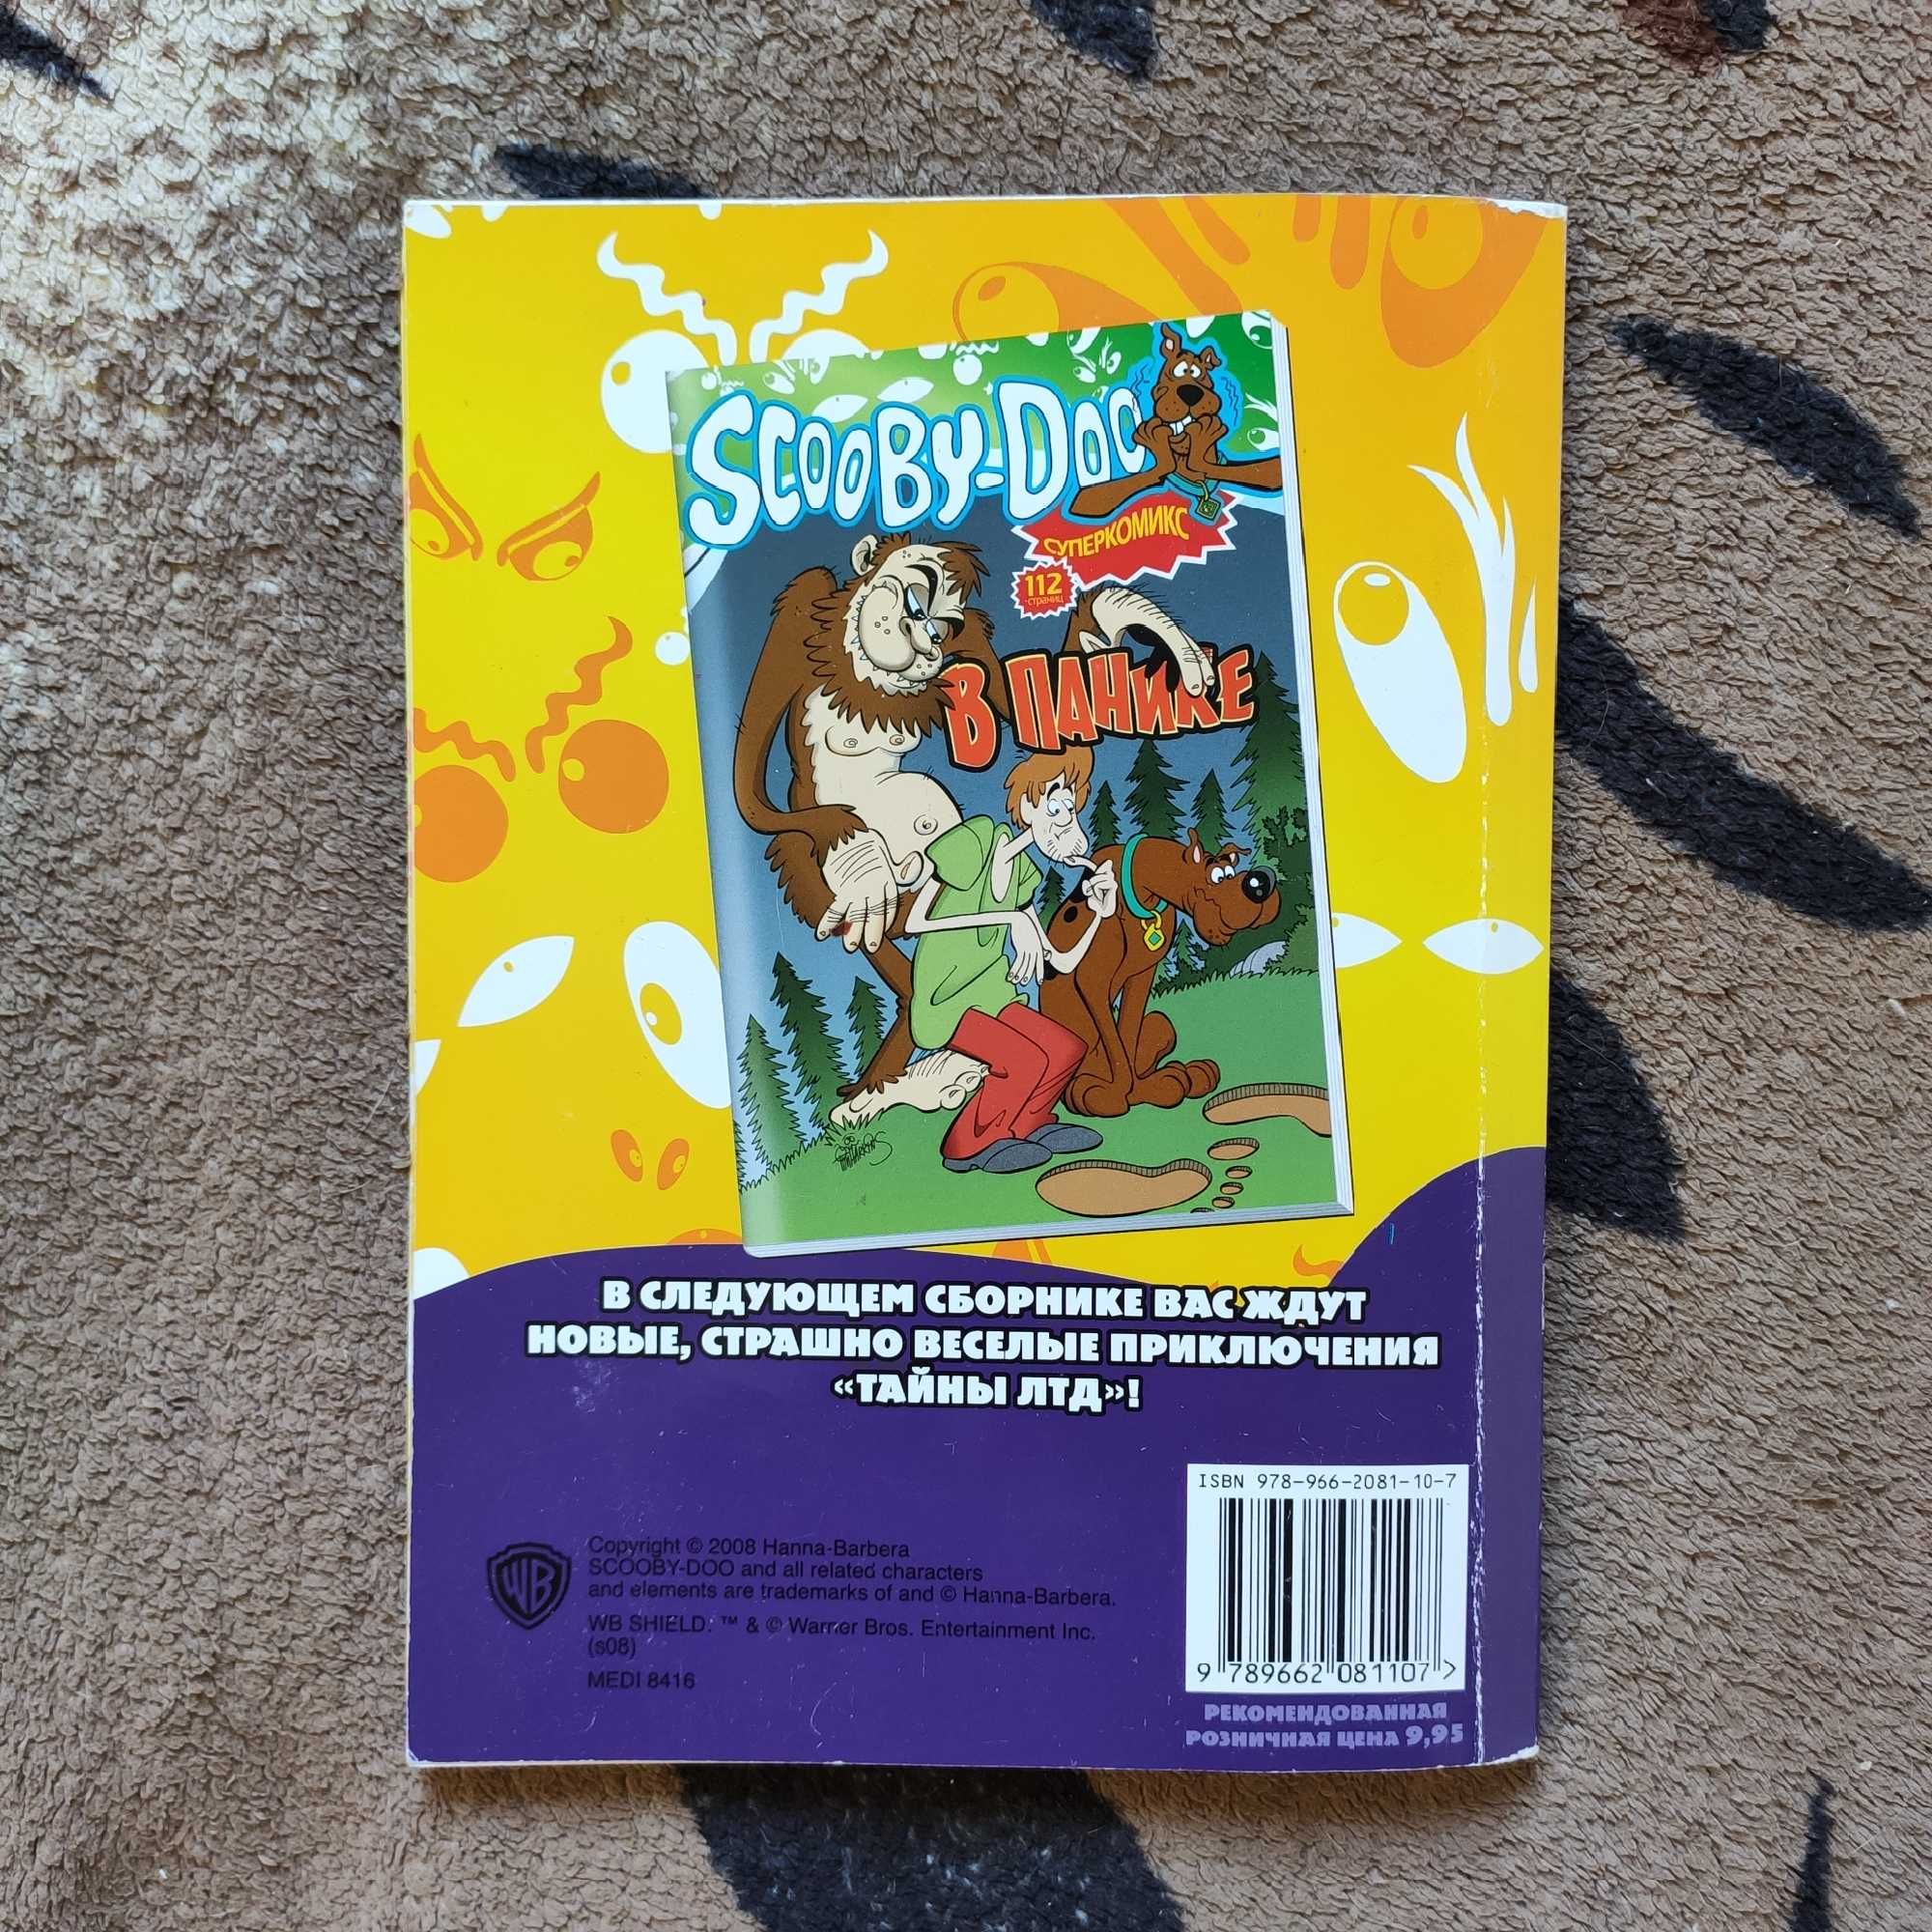 Комікс "Scooby-Doo В Погоне" ("Скуби-Ду В Погоне")